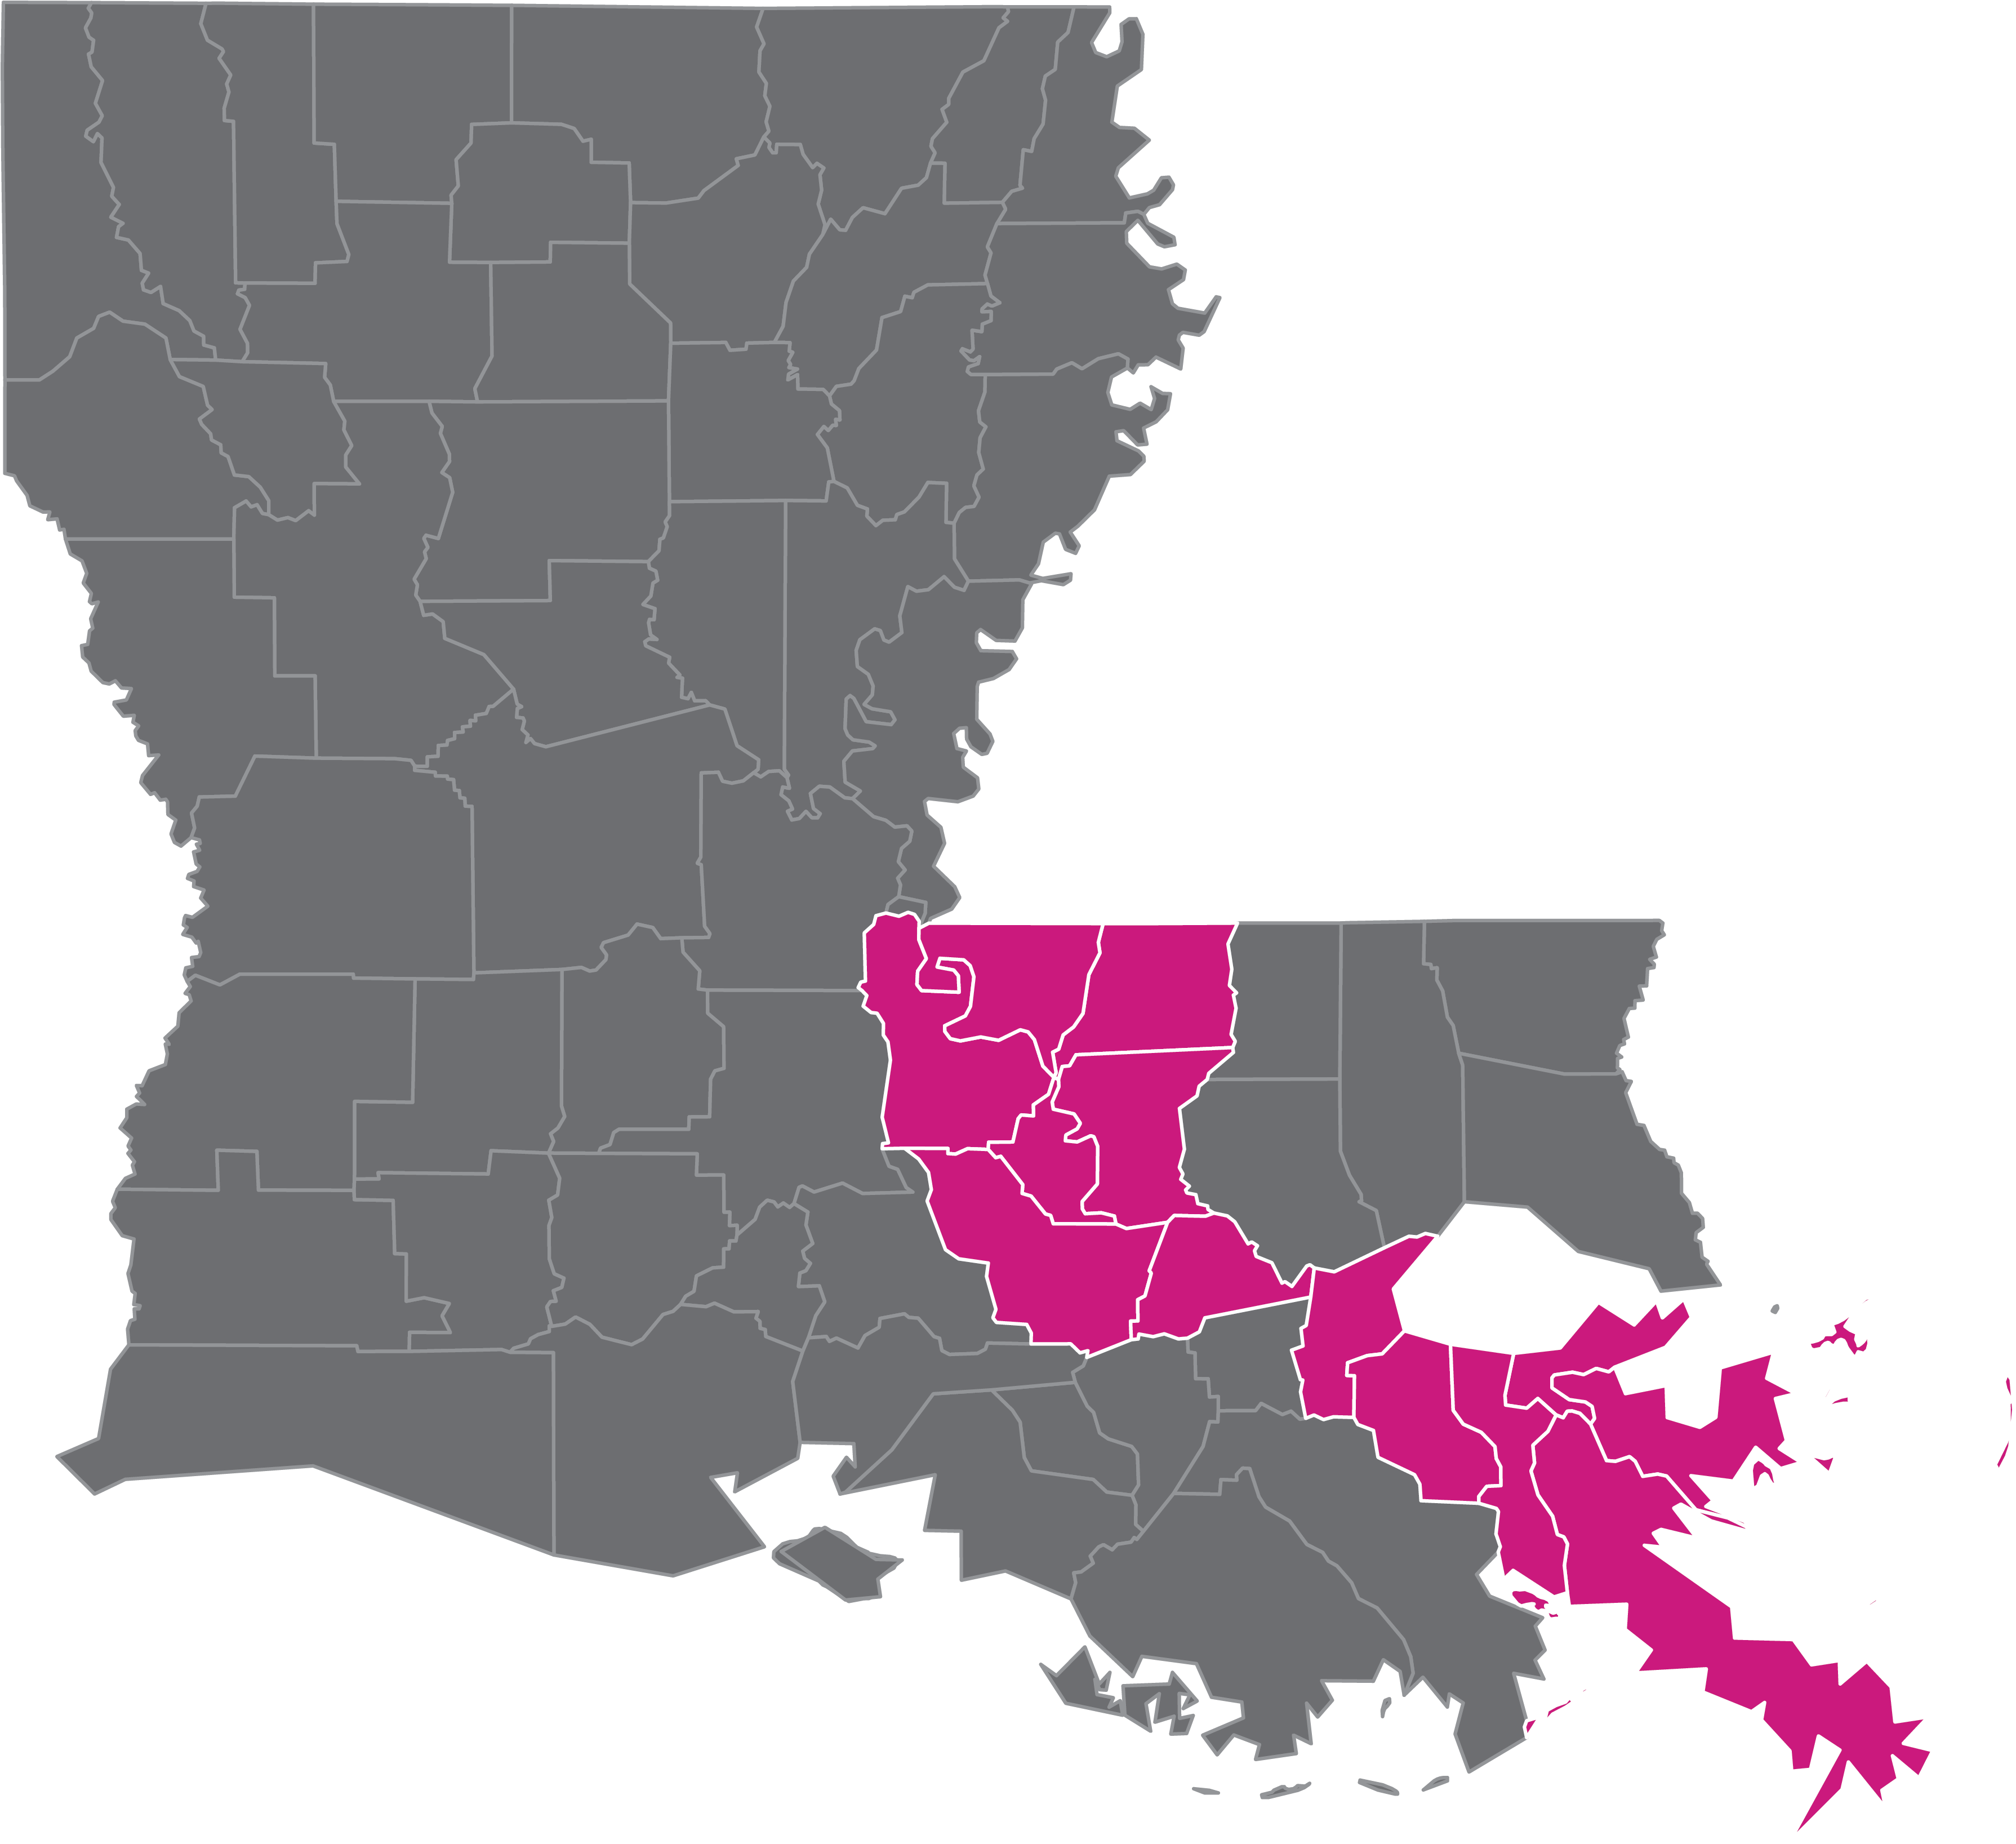 Louisiana state map